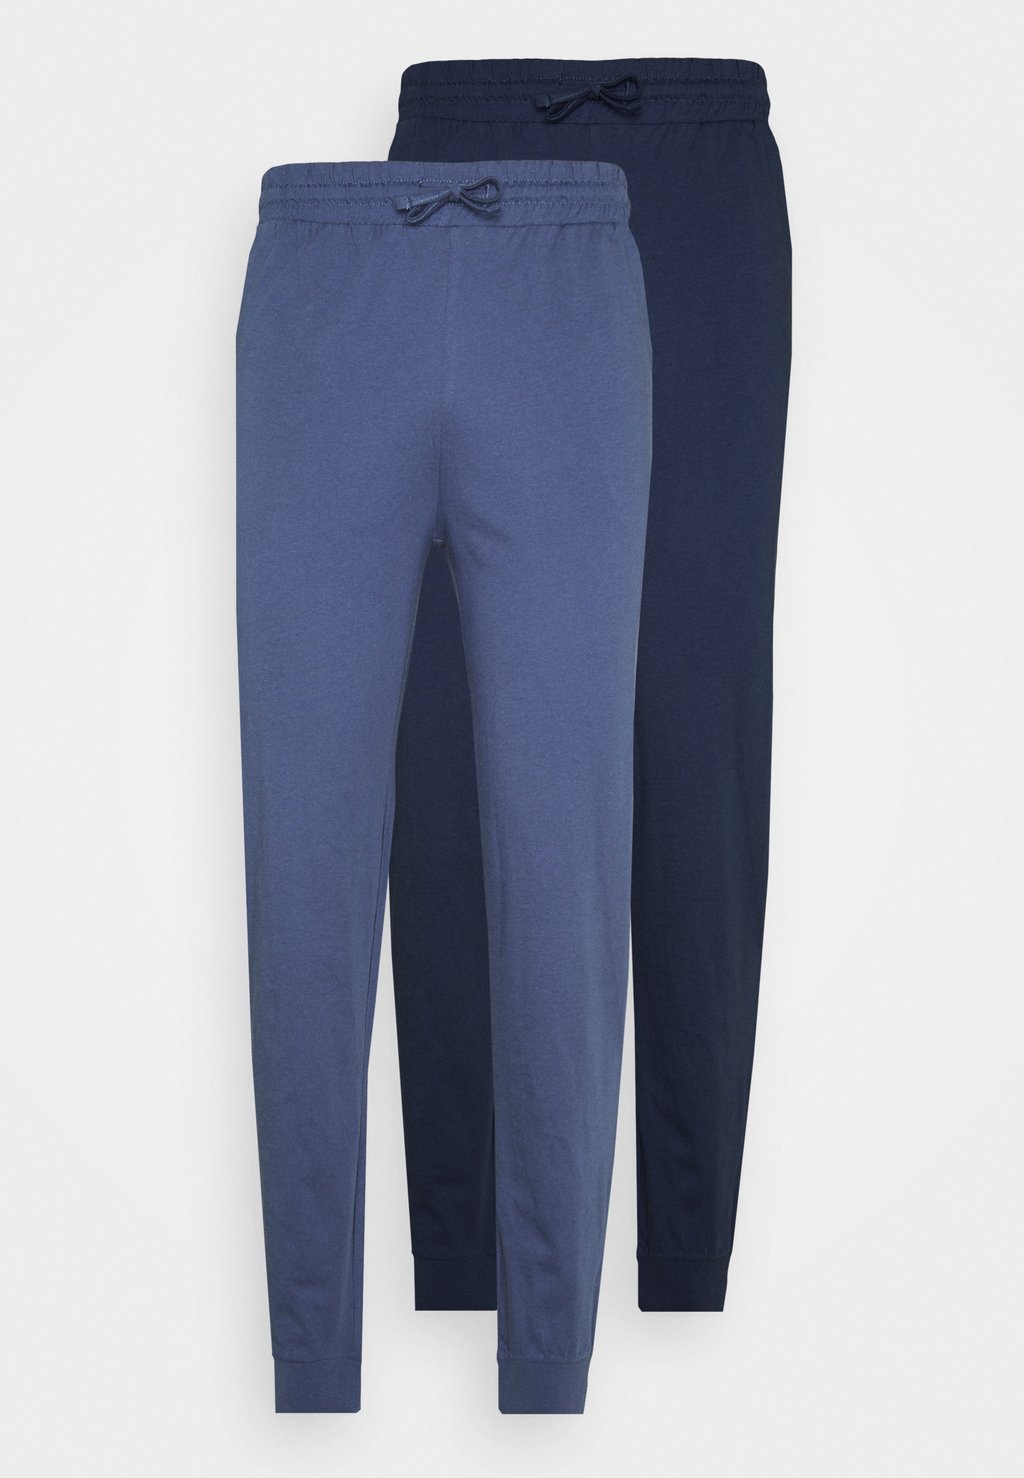 Пижамные штаны 2 ПАКЕТА Pier One, темно-синий/синий